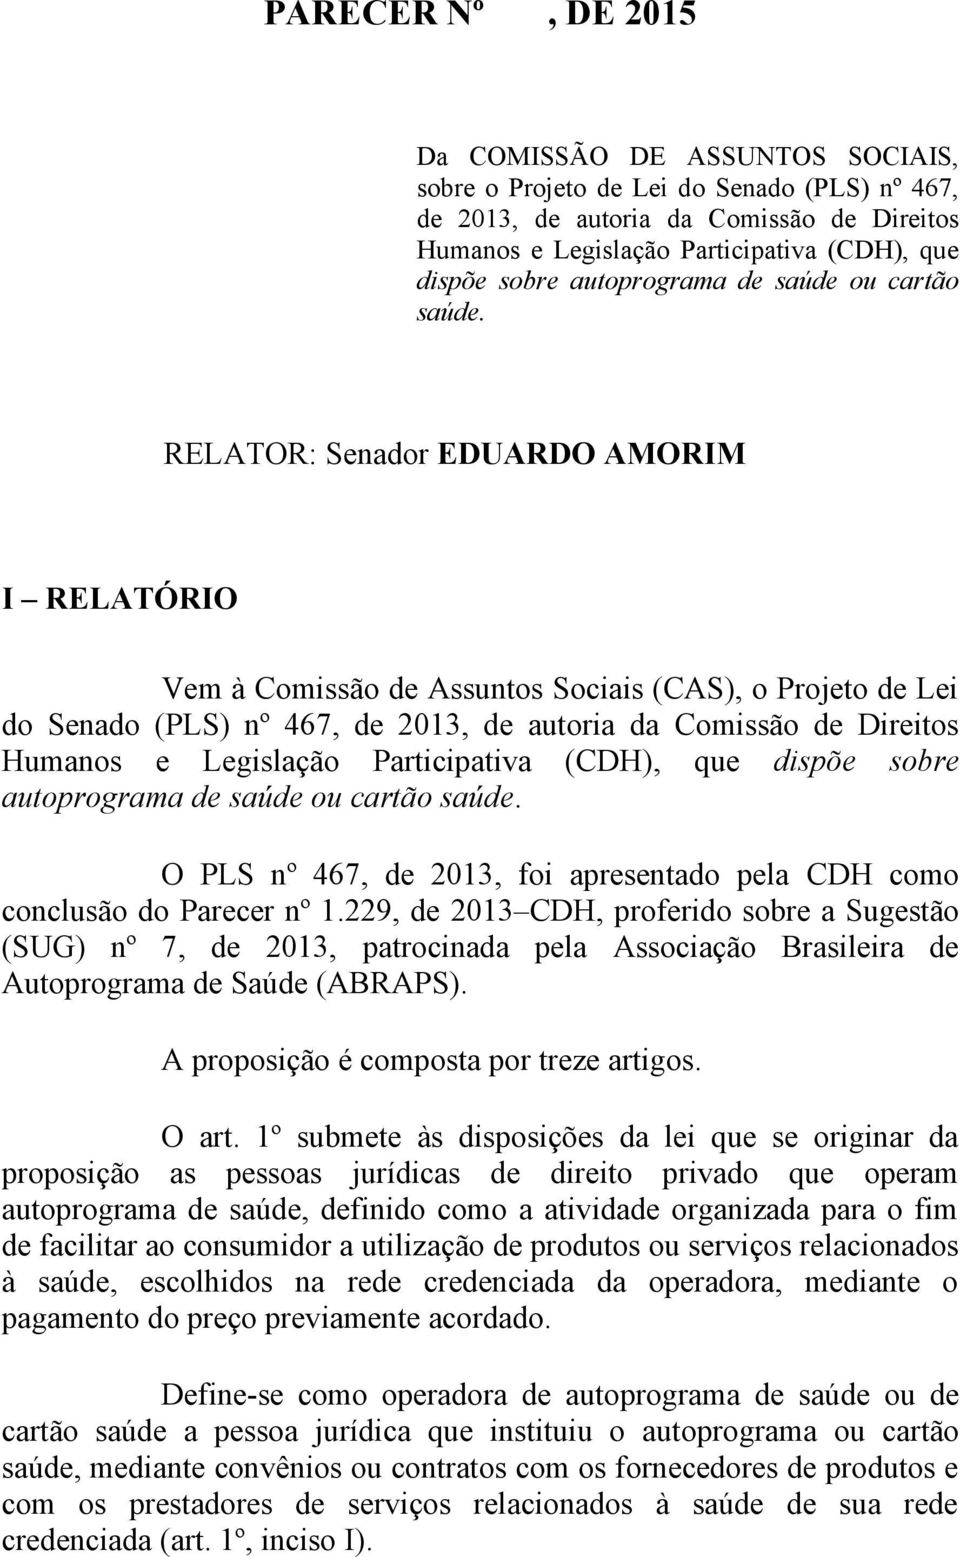 RELATOR: Senador EDUARDO AMORIM I RELATÓRIO Vem à Comissão de Assuntos Sociais (CAS), o Projeto de Lei do Senado (PLS) nº 467, de 2013, de autoria da Comissão de Direitos Humanos e Legislação